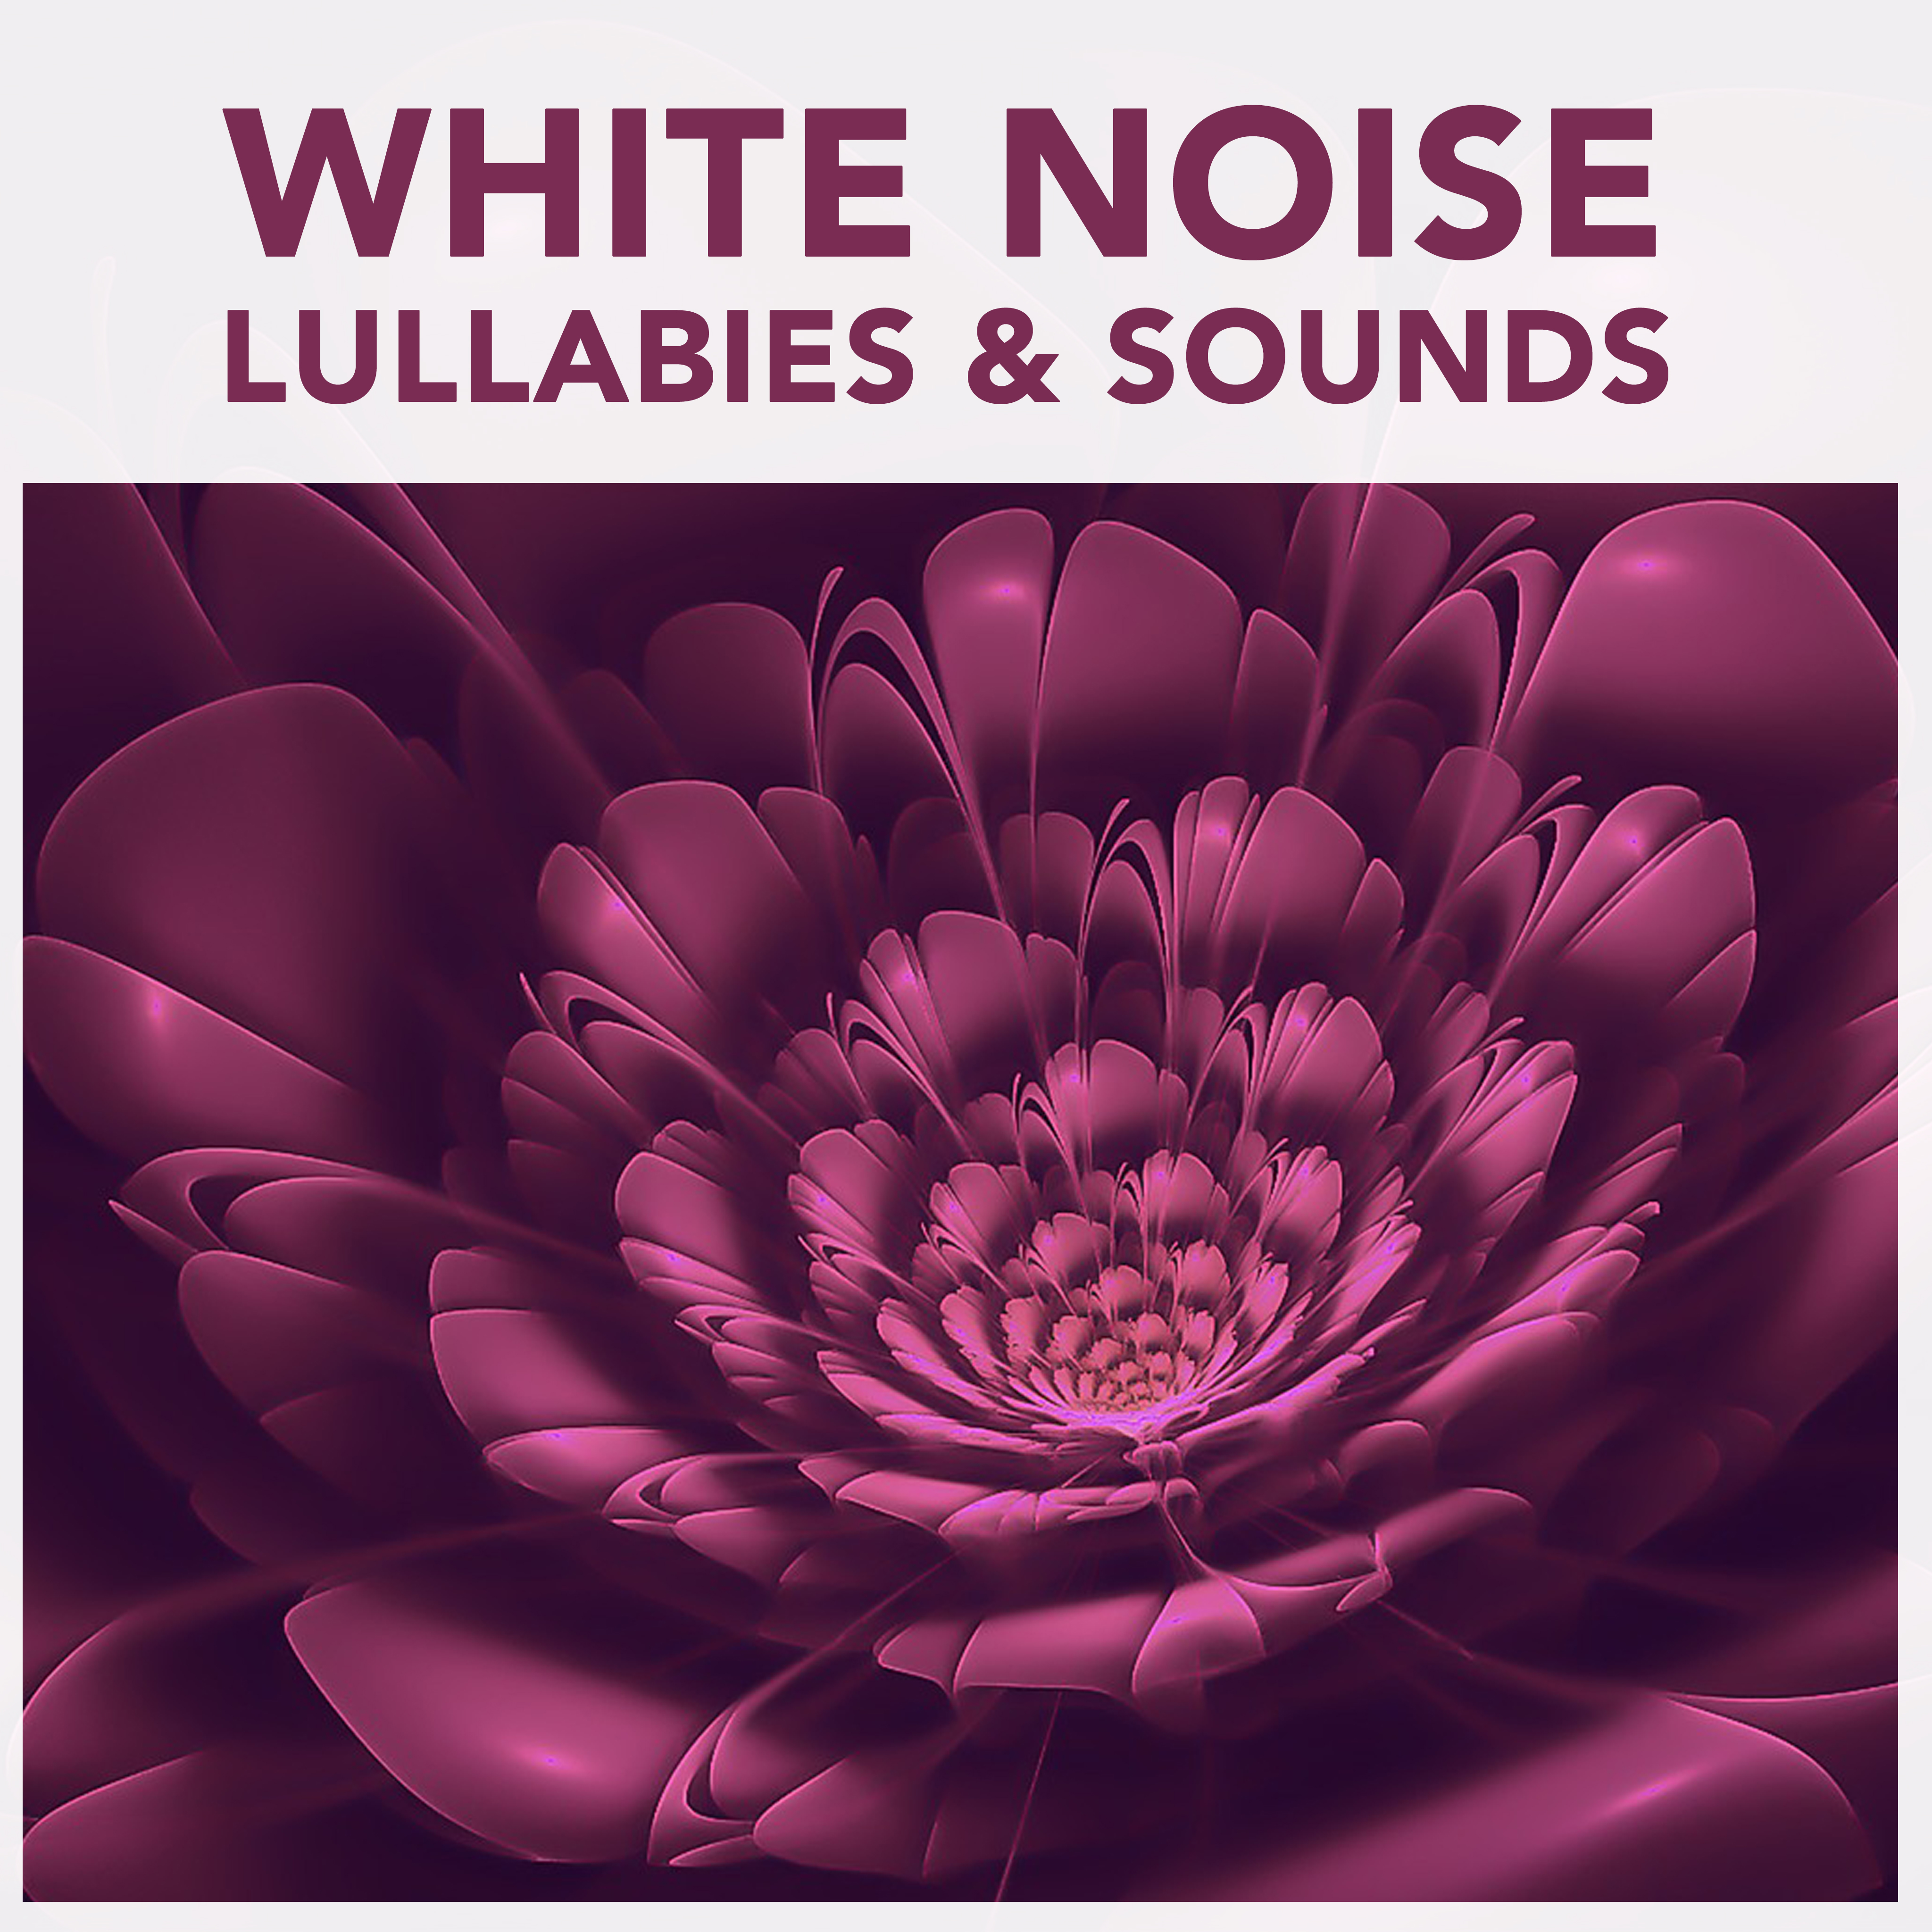 15 White Noise Lullabies & Sounds